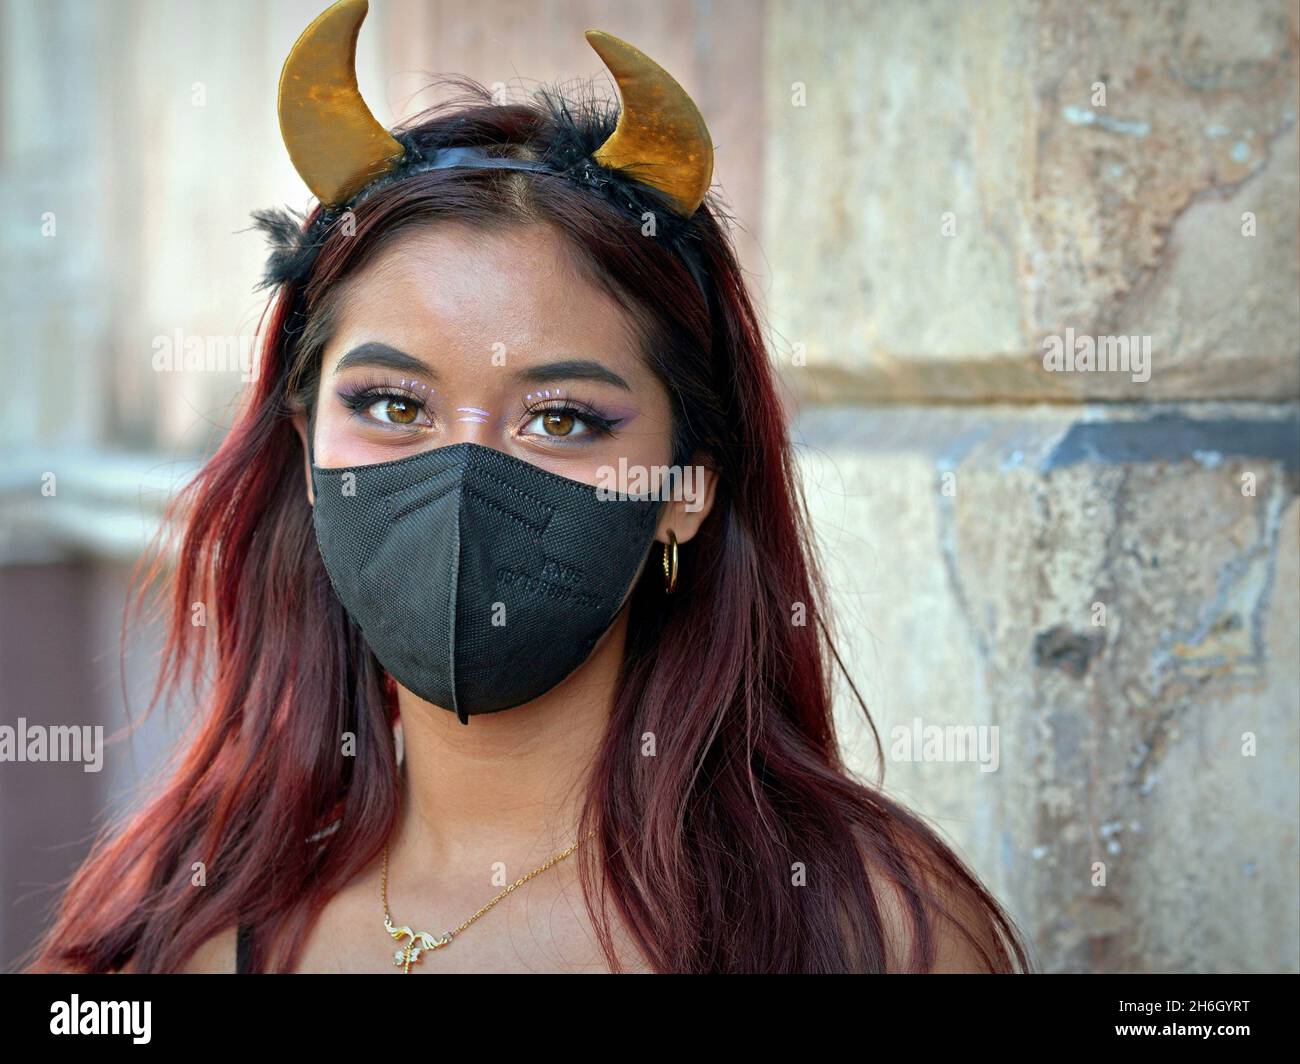 Jolie fille mexicaine avec des cornes de diable jaune serre-tête porte un masque noir pendant la pandémie mondiale de coronavirus et regarde le spectateur. Banque D'Images